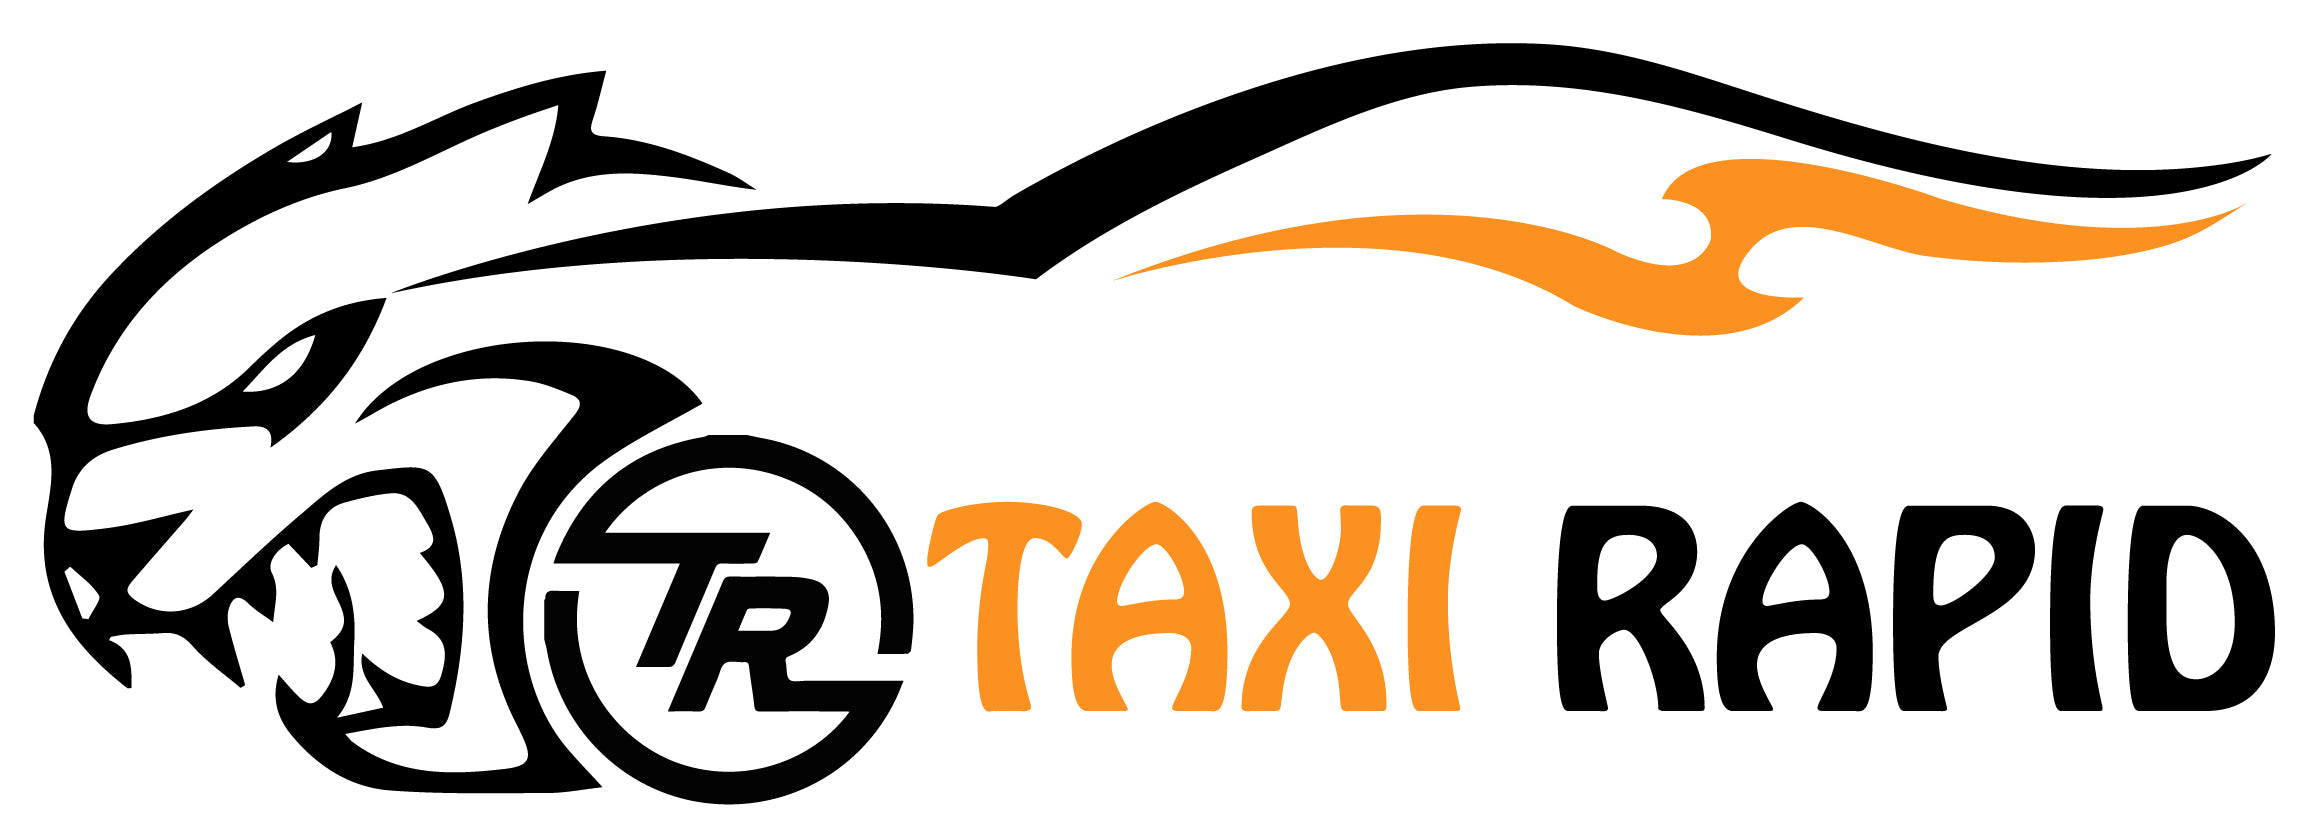 Taxi Rapid